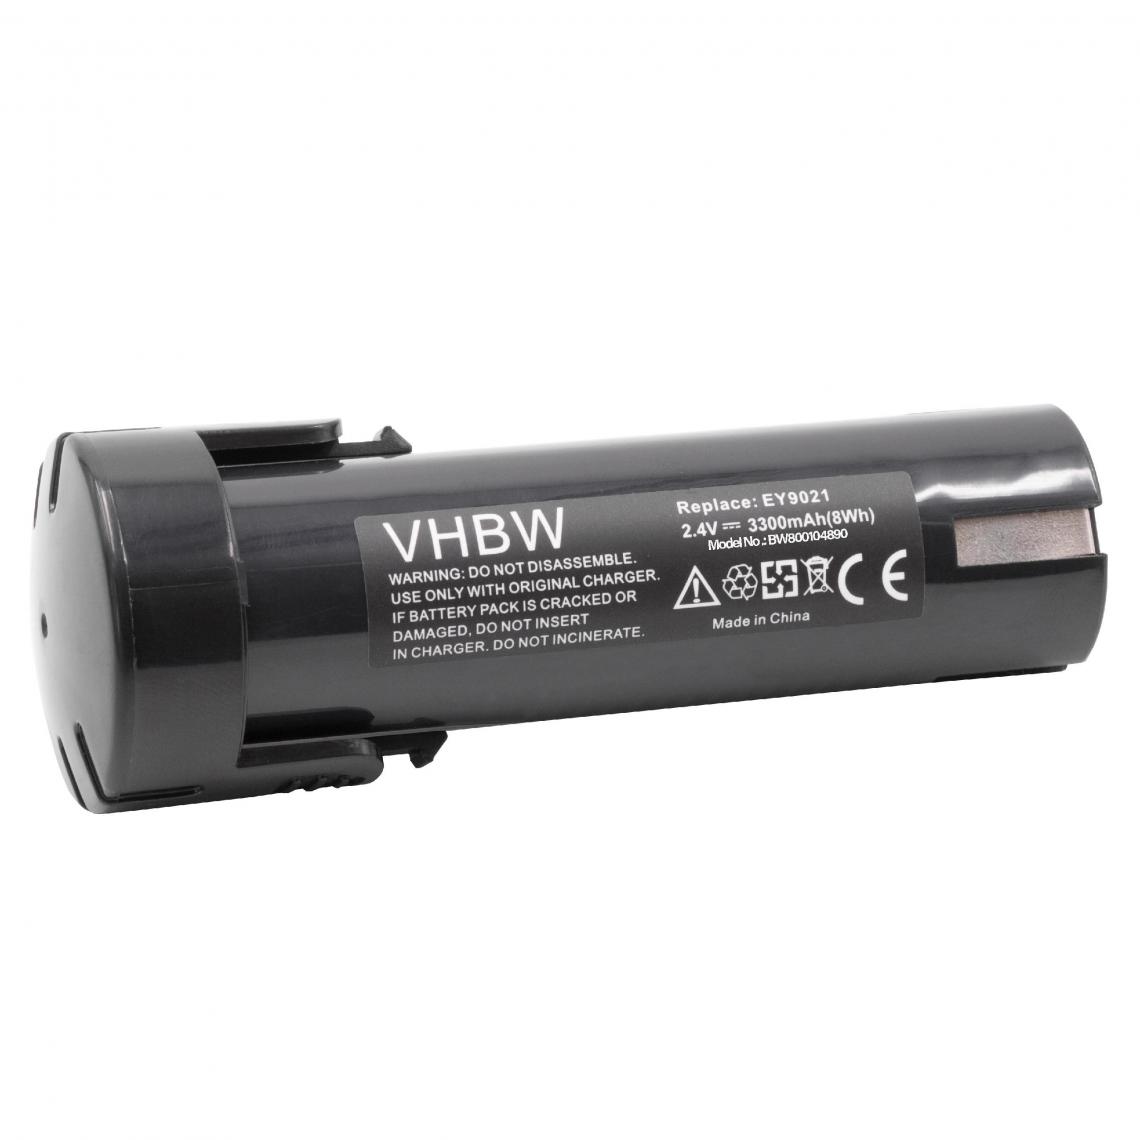 Vhbw - vhbw Batterie compatible avec Panasonic EY6220B, EY6220D, EY6220DR, EY9021, EY9021B, EY903 outil électrique (3300mAh NiMH 2,4V) - Clouterie